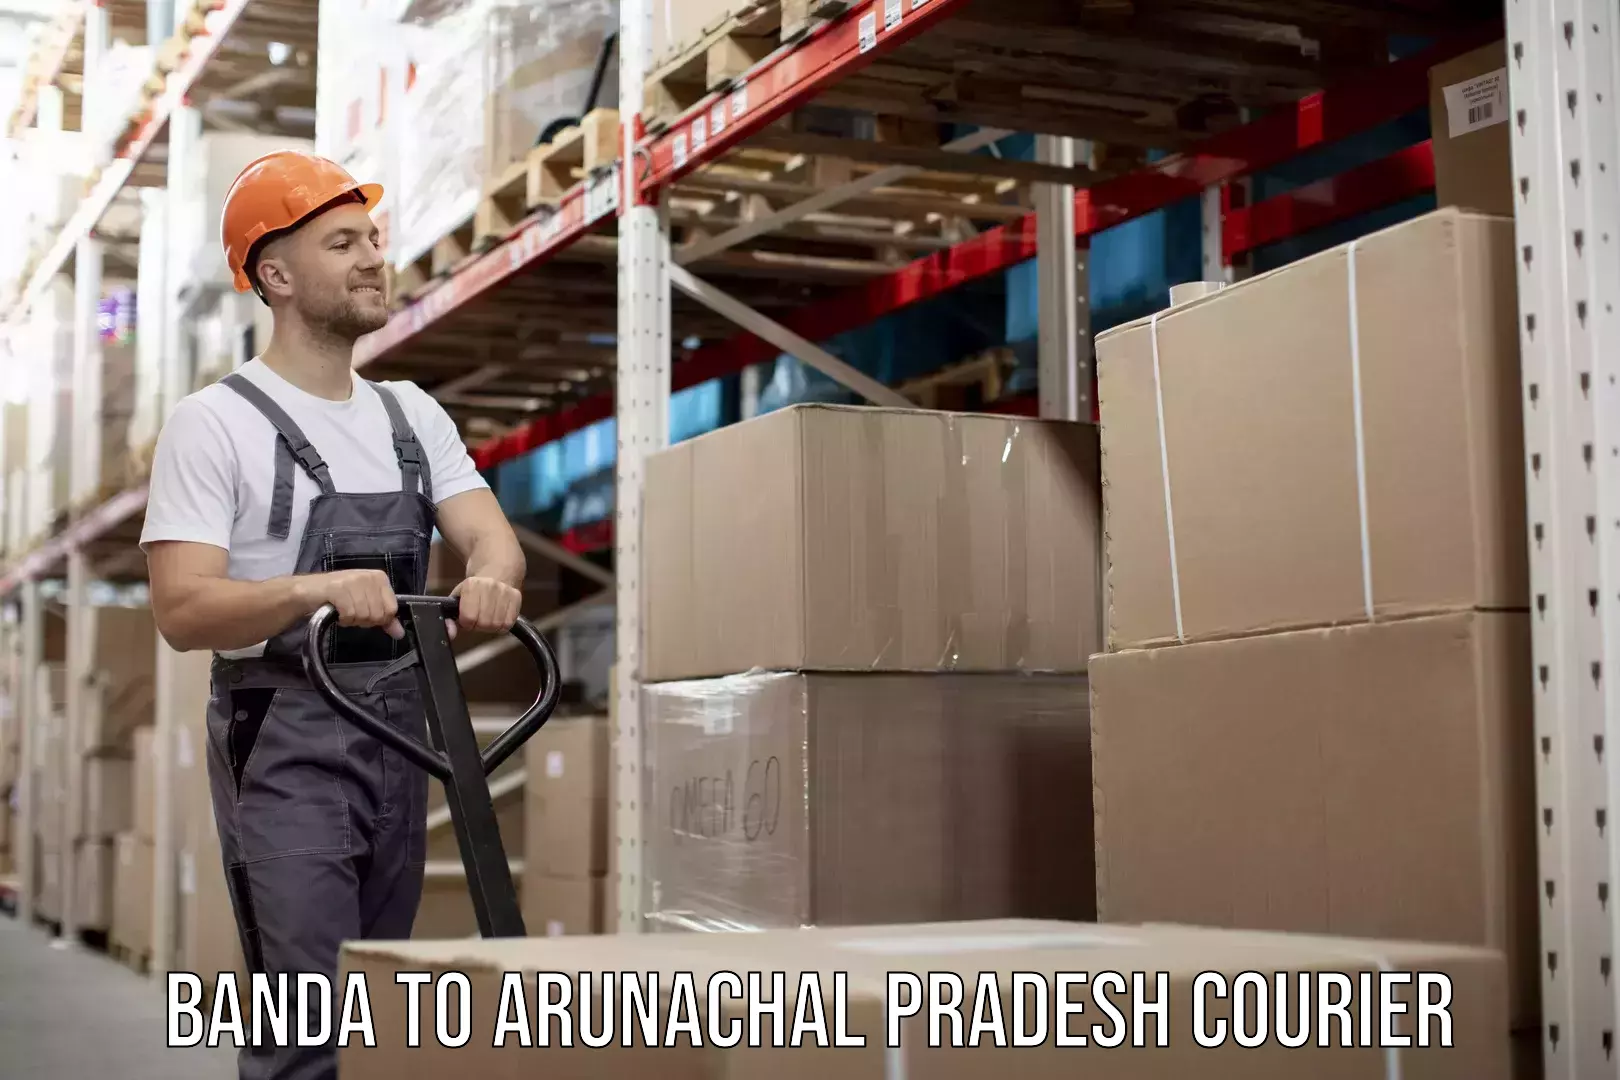 Personal parcel delivery Banda to Arunachal Pradesh